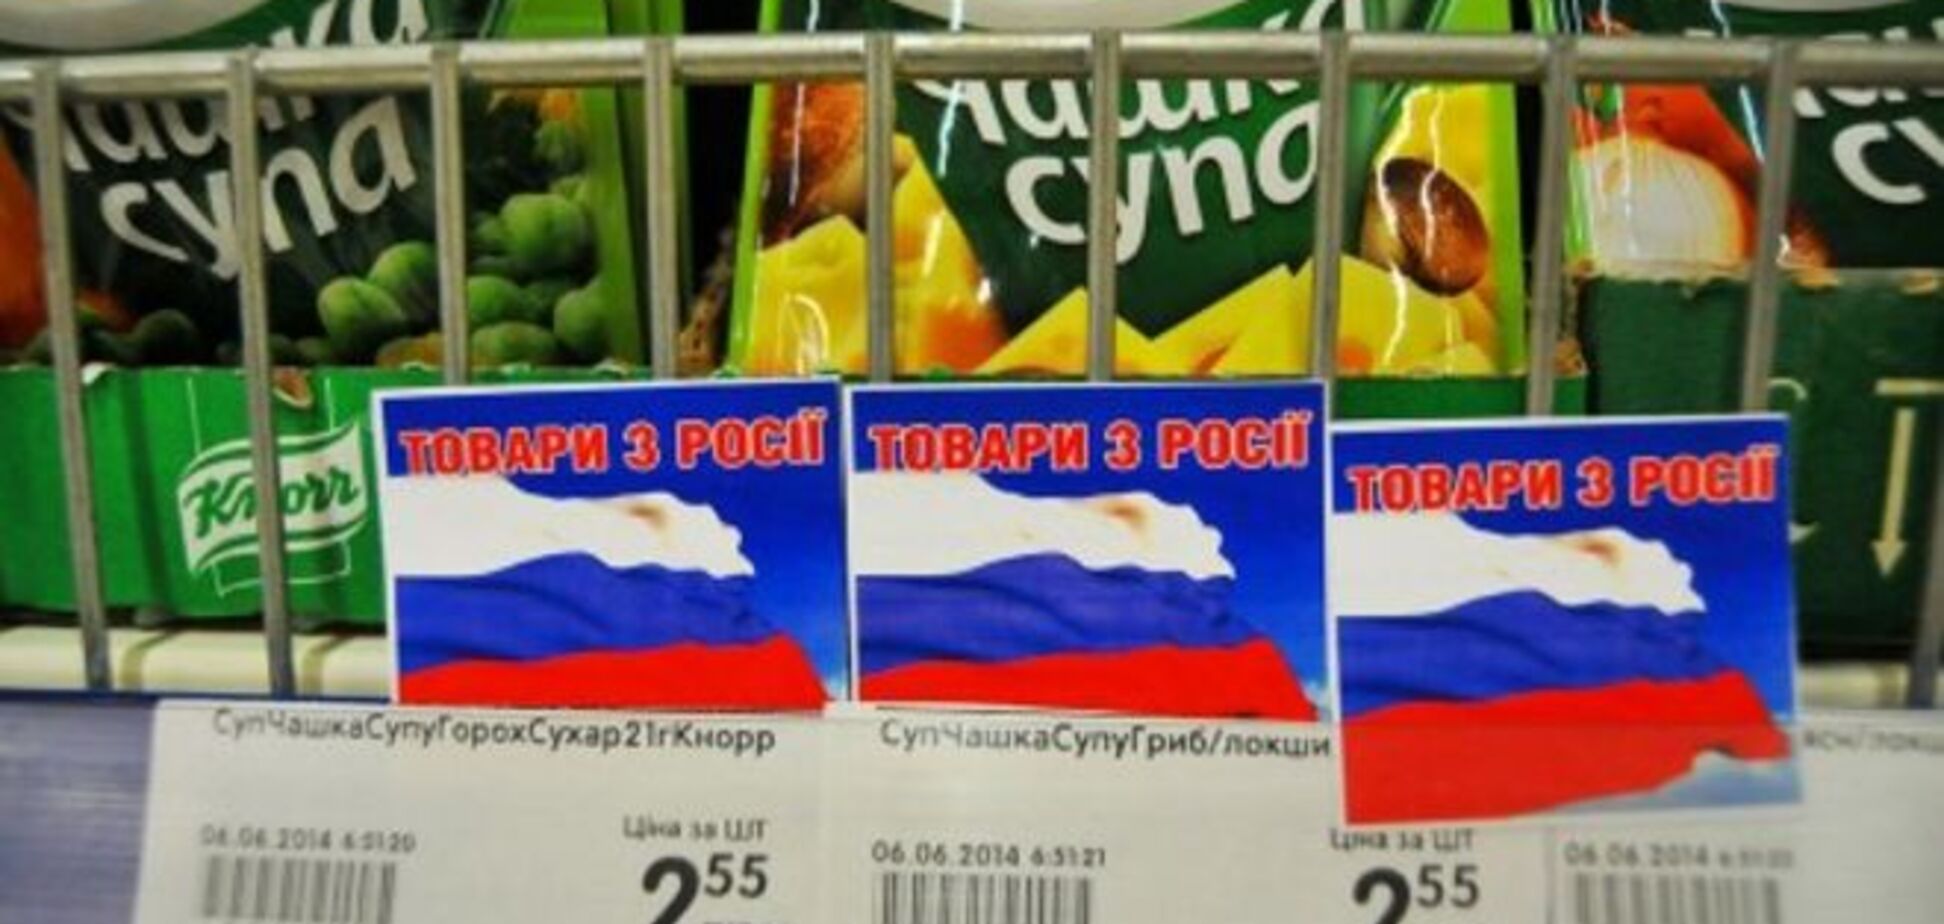 РФ несет колоссальные потери из-за бойкота российских товаров украинцами